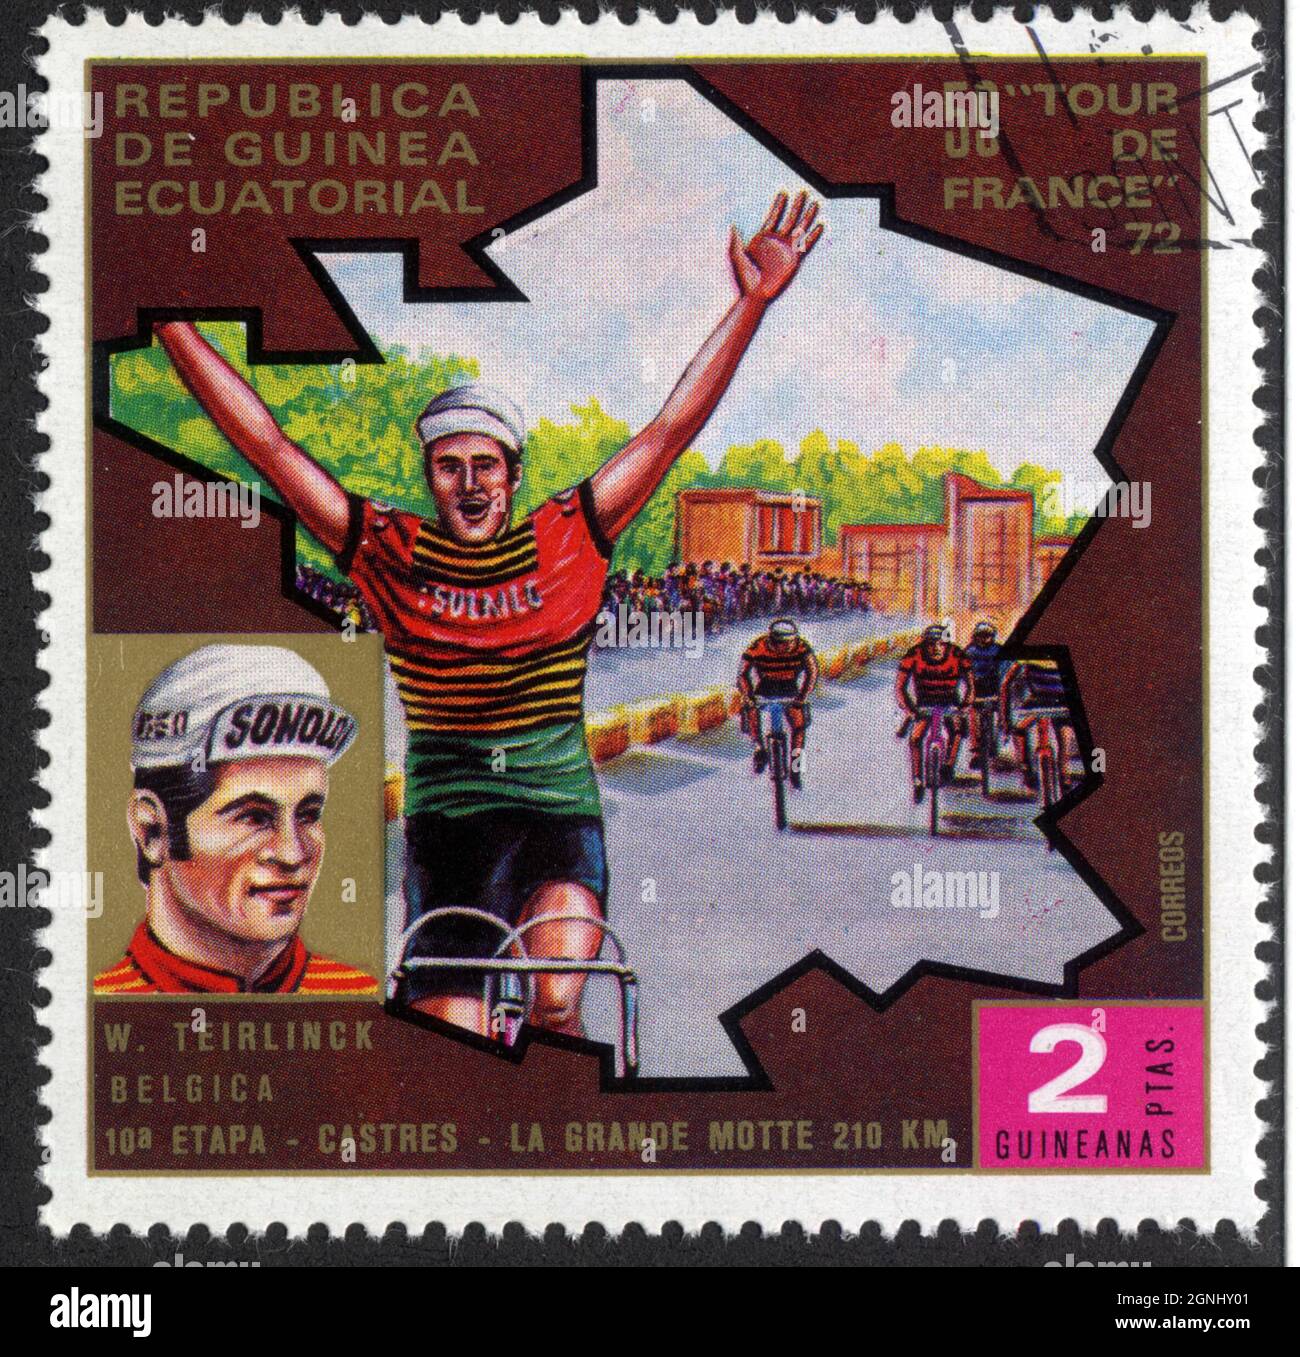 Timbre Republica de Guinea Ecuatorial, 59 Tour de France 72, W.Teirlinck, Belgica,10a etapa - Castres-La Grande Motte 210 km,Correos, 2 Ptas Guineanas Stock Photo